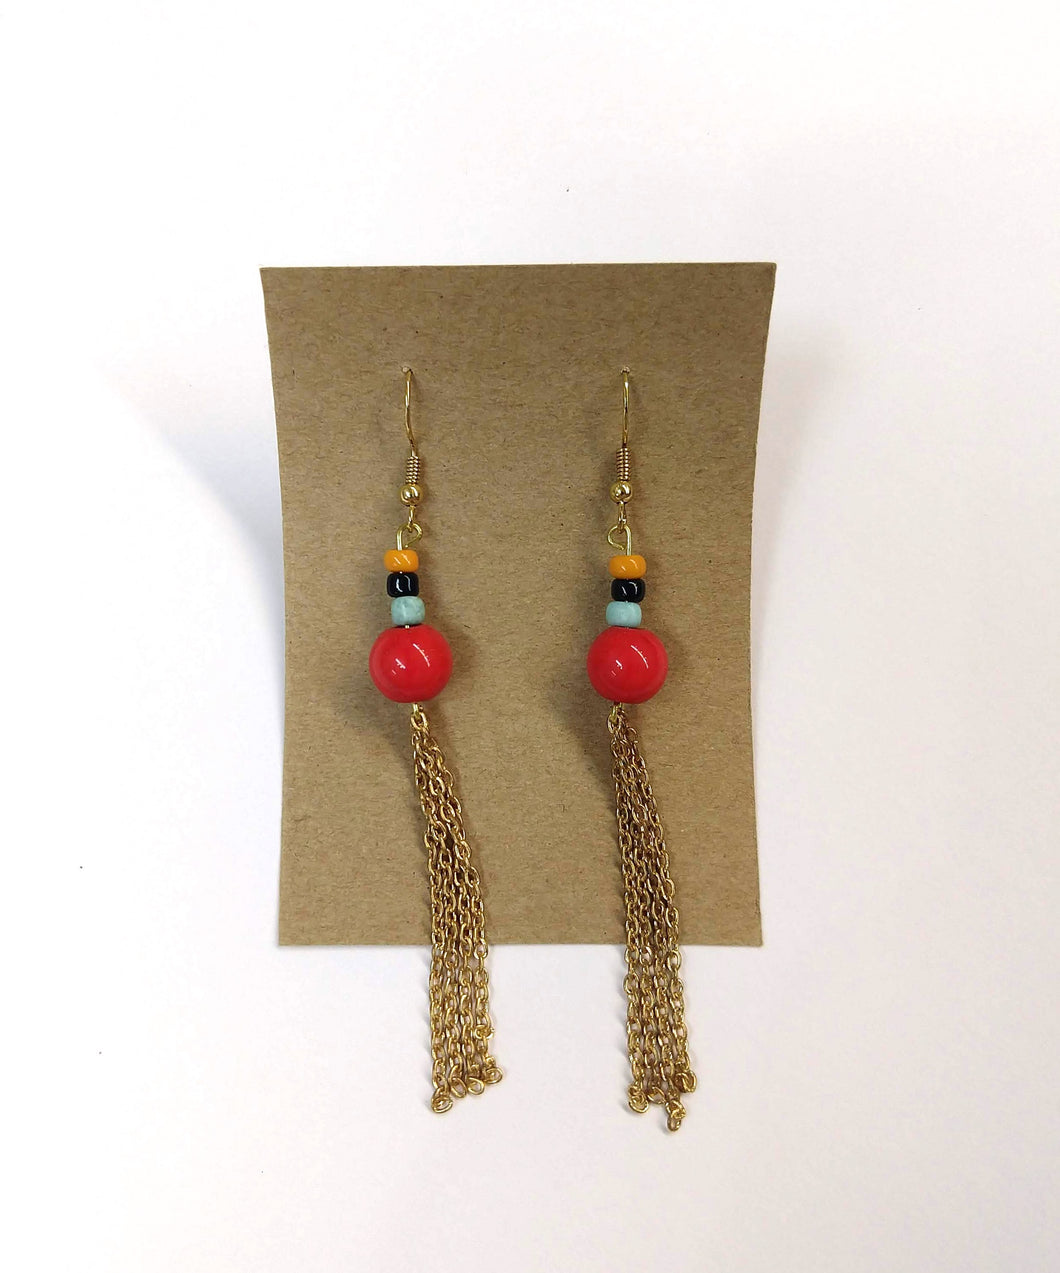 glass bead earrings in red